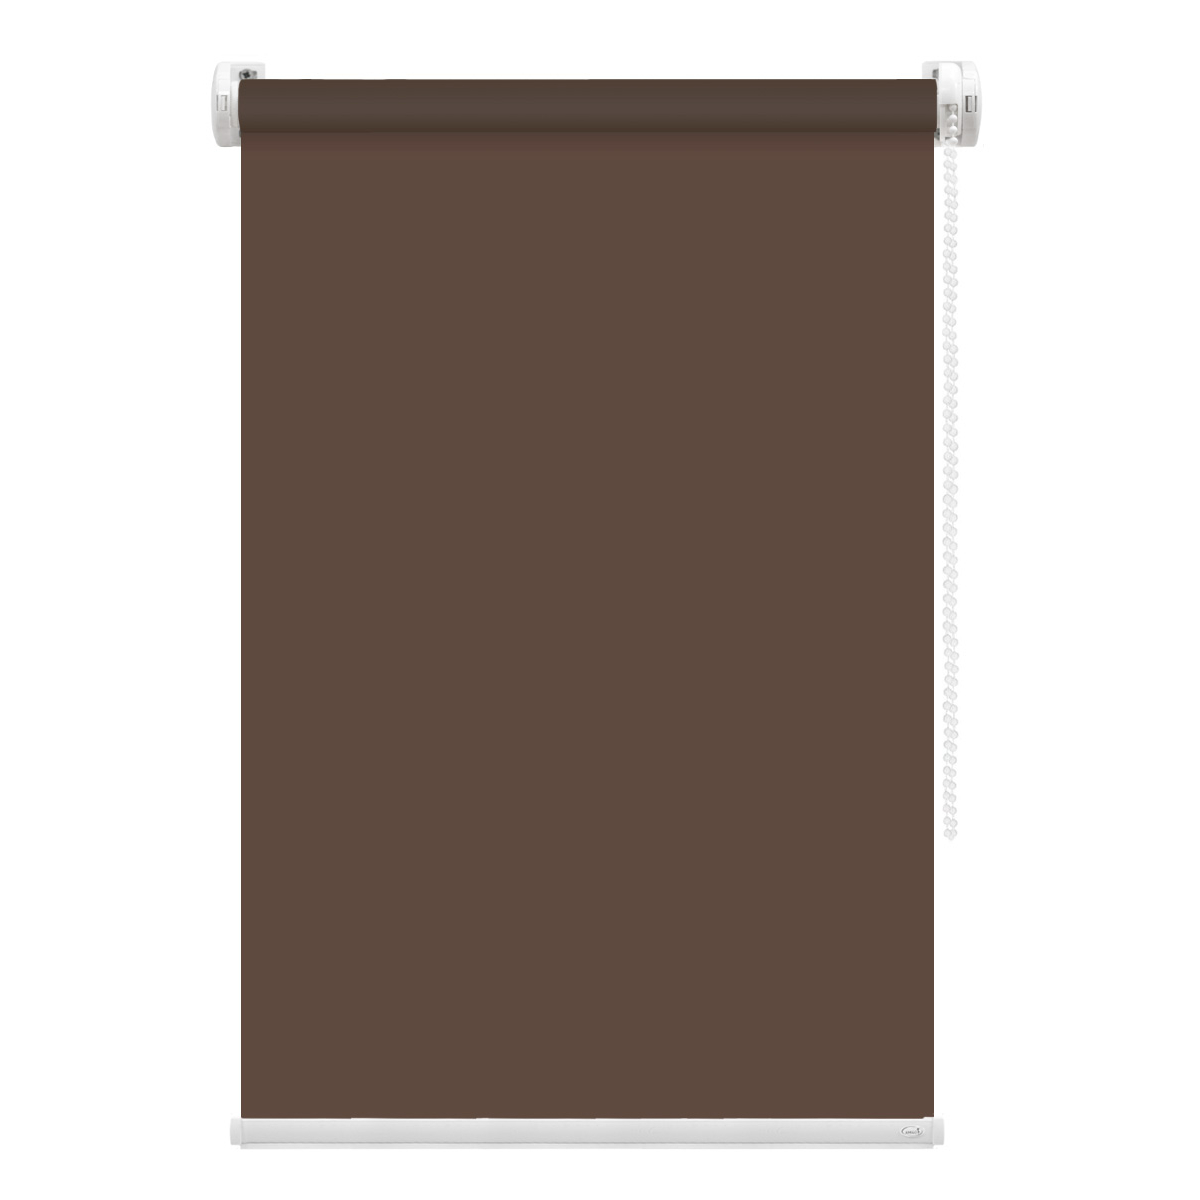 Рулонная штора FixLine Amigo Basic коричневая 65х160 см рулонная штора fixline amigo basic коричневая 65х160 см